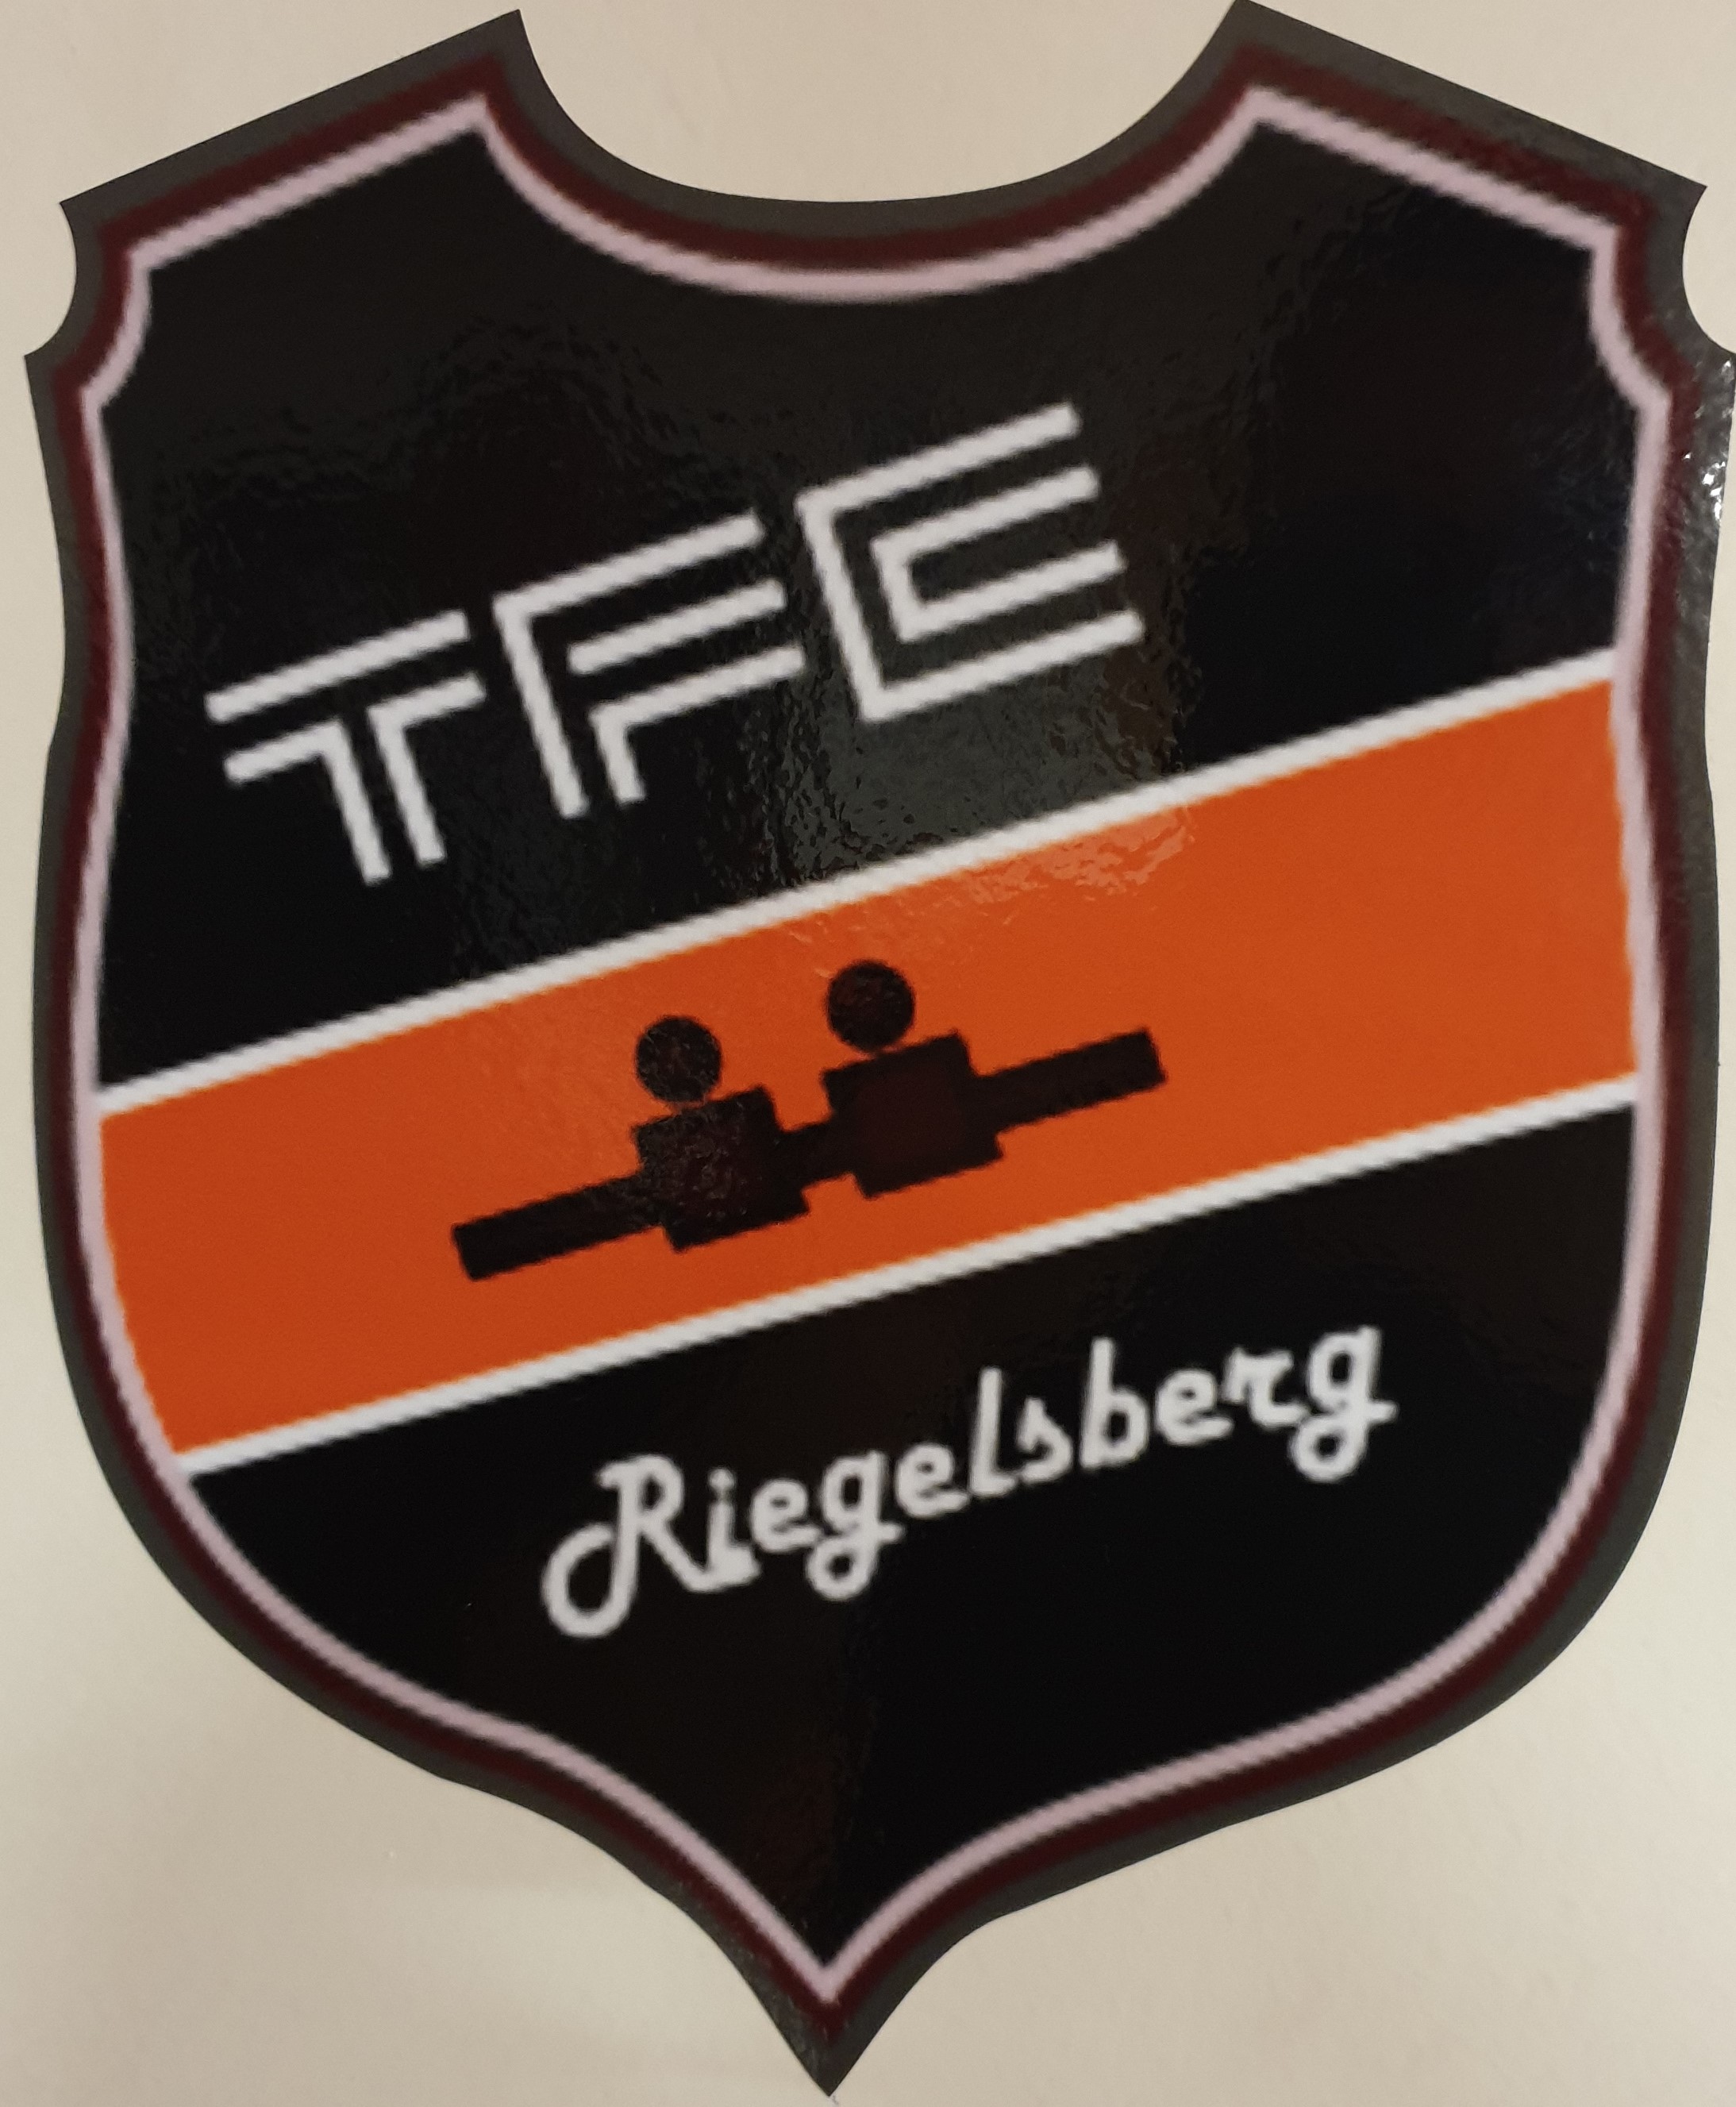 TFC Riegelsberg